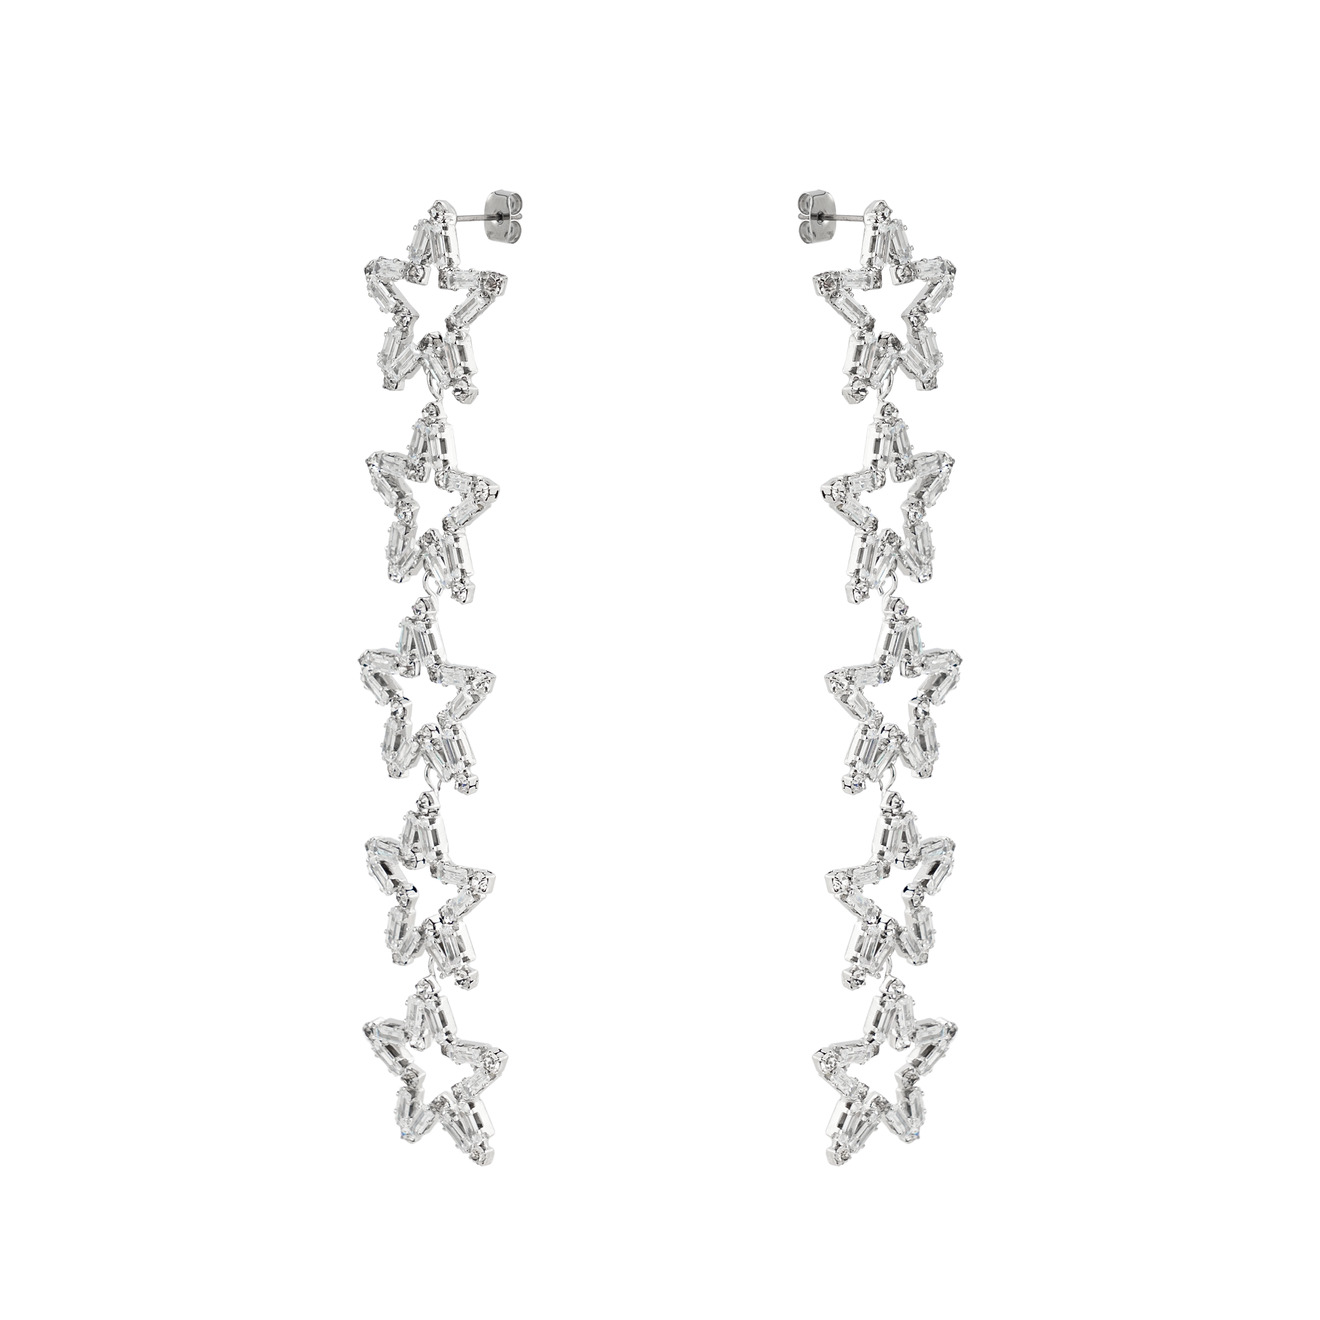 Herald Percy Серебристые серьги-дорожки из звезд с кристаллами herald percy серебристые длинные серьги дорожки с кристаллами